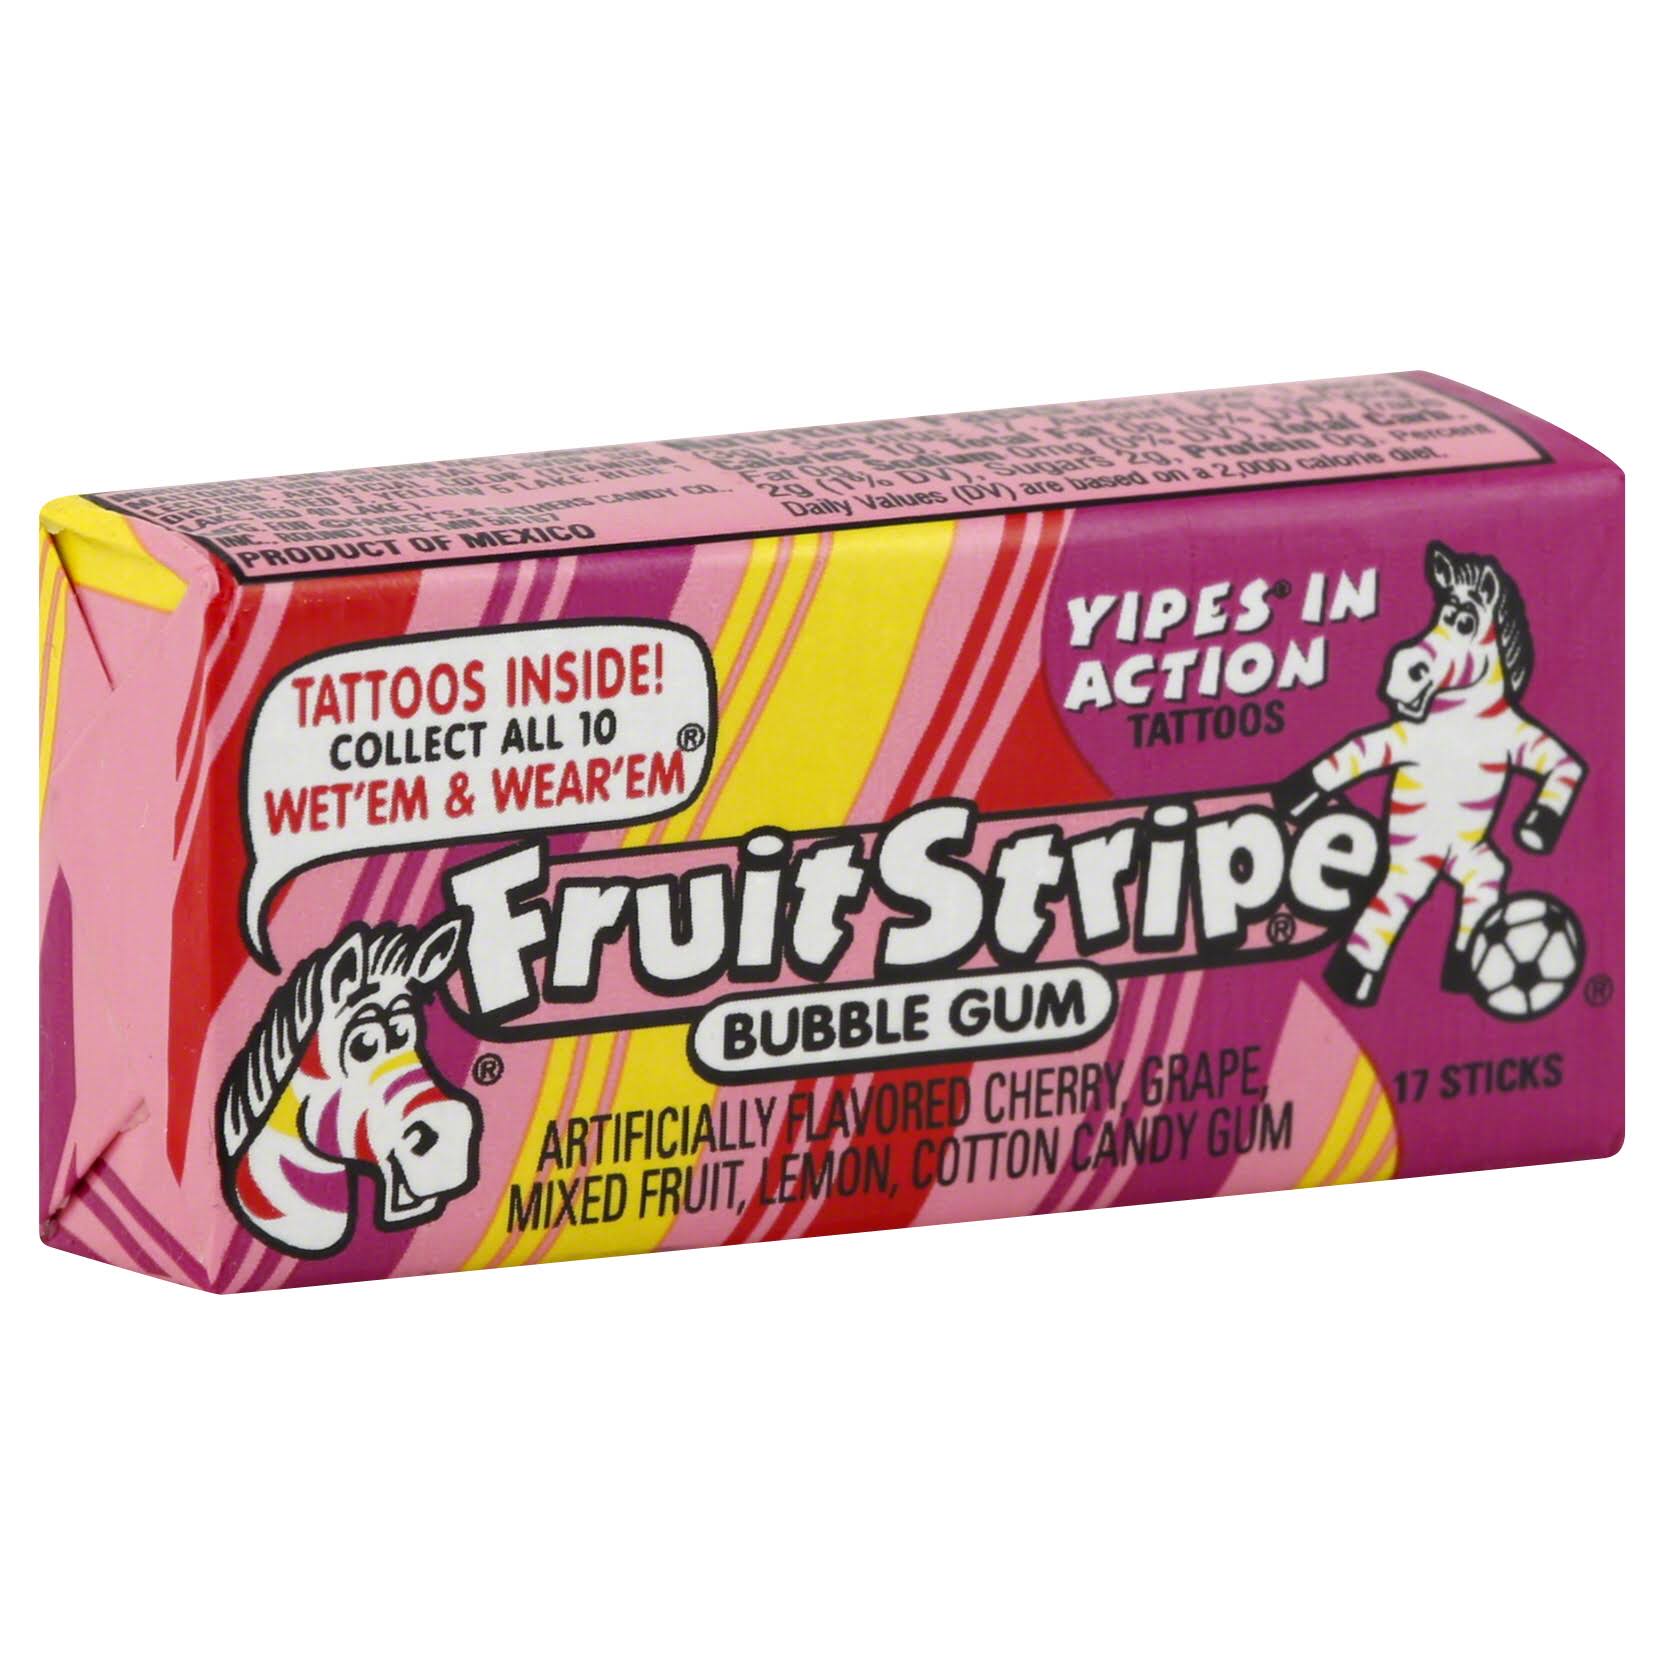 Fruit Stripe Bubble Gum - Mixed Fruit, 12 Packs